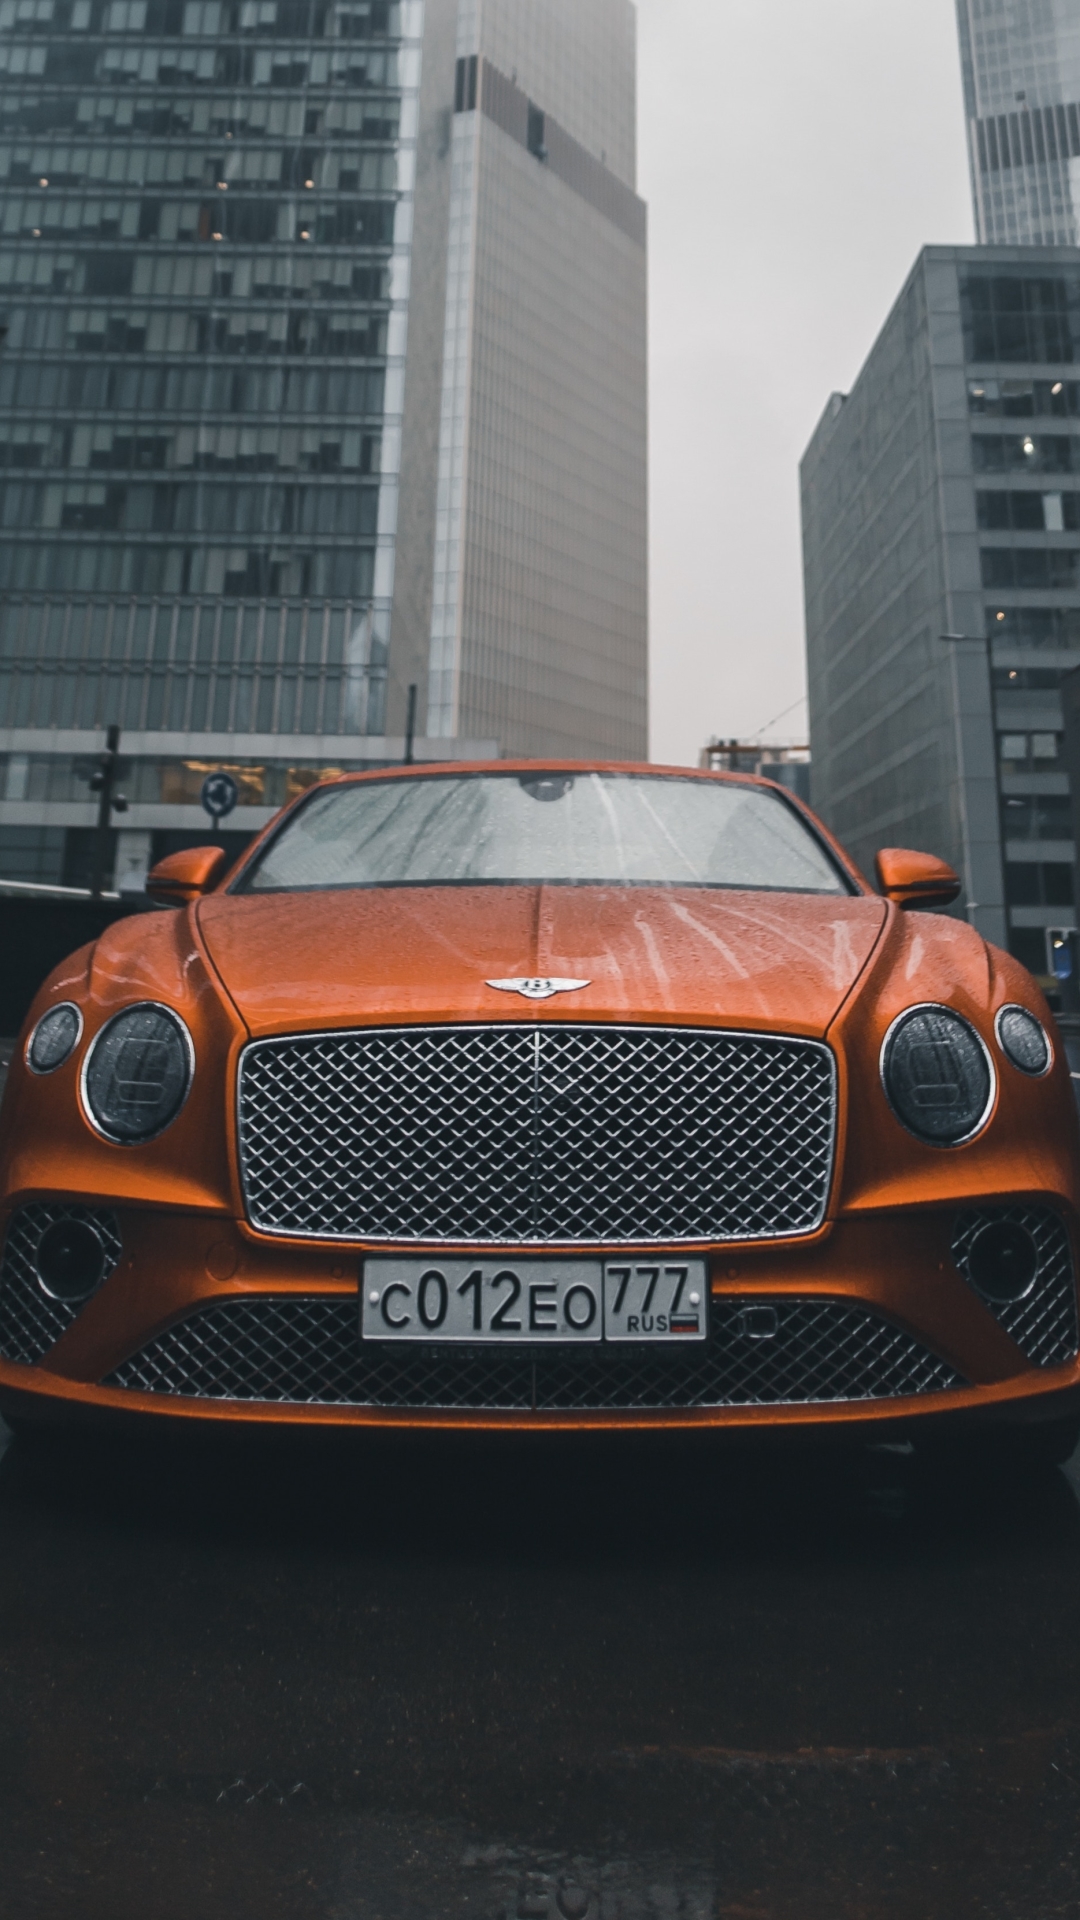 Descarga gratuita de fondo de pantalla para móvil de Bentley, Coche, Bentley Continental Gt, Vehículo, Vehículos, Bentley Continental, Coche Naranja.